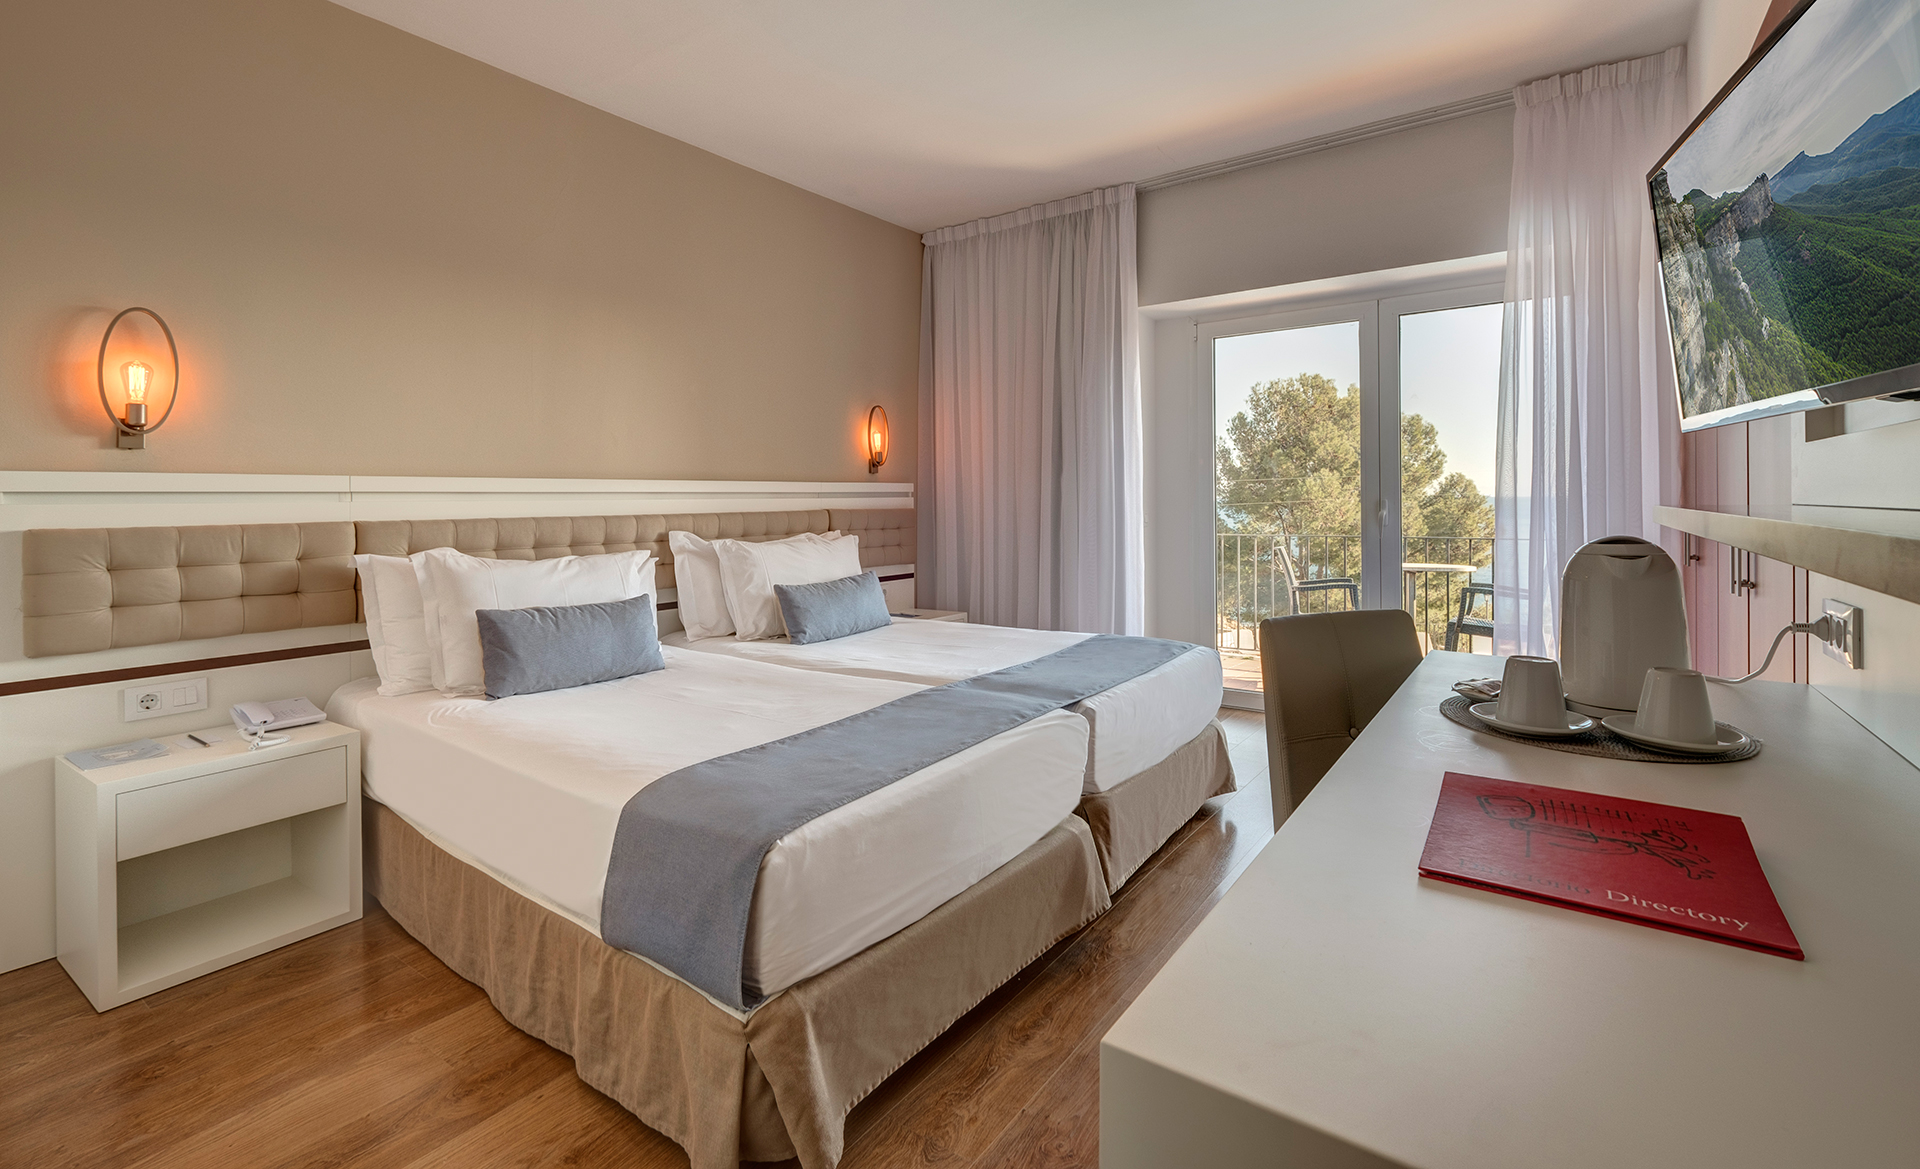 Golf-expedition-golfreizen-golfresort-Spanje-Regio-Ginora-silken-park-hotel-san-jorge-appartement-bedroom-4